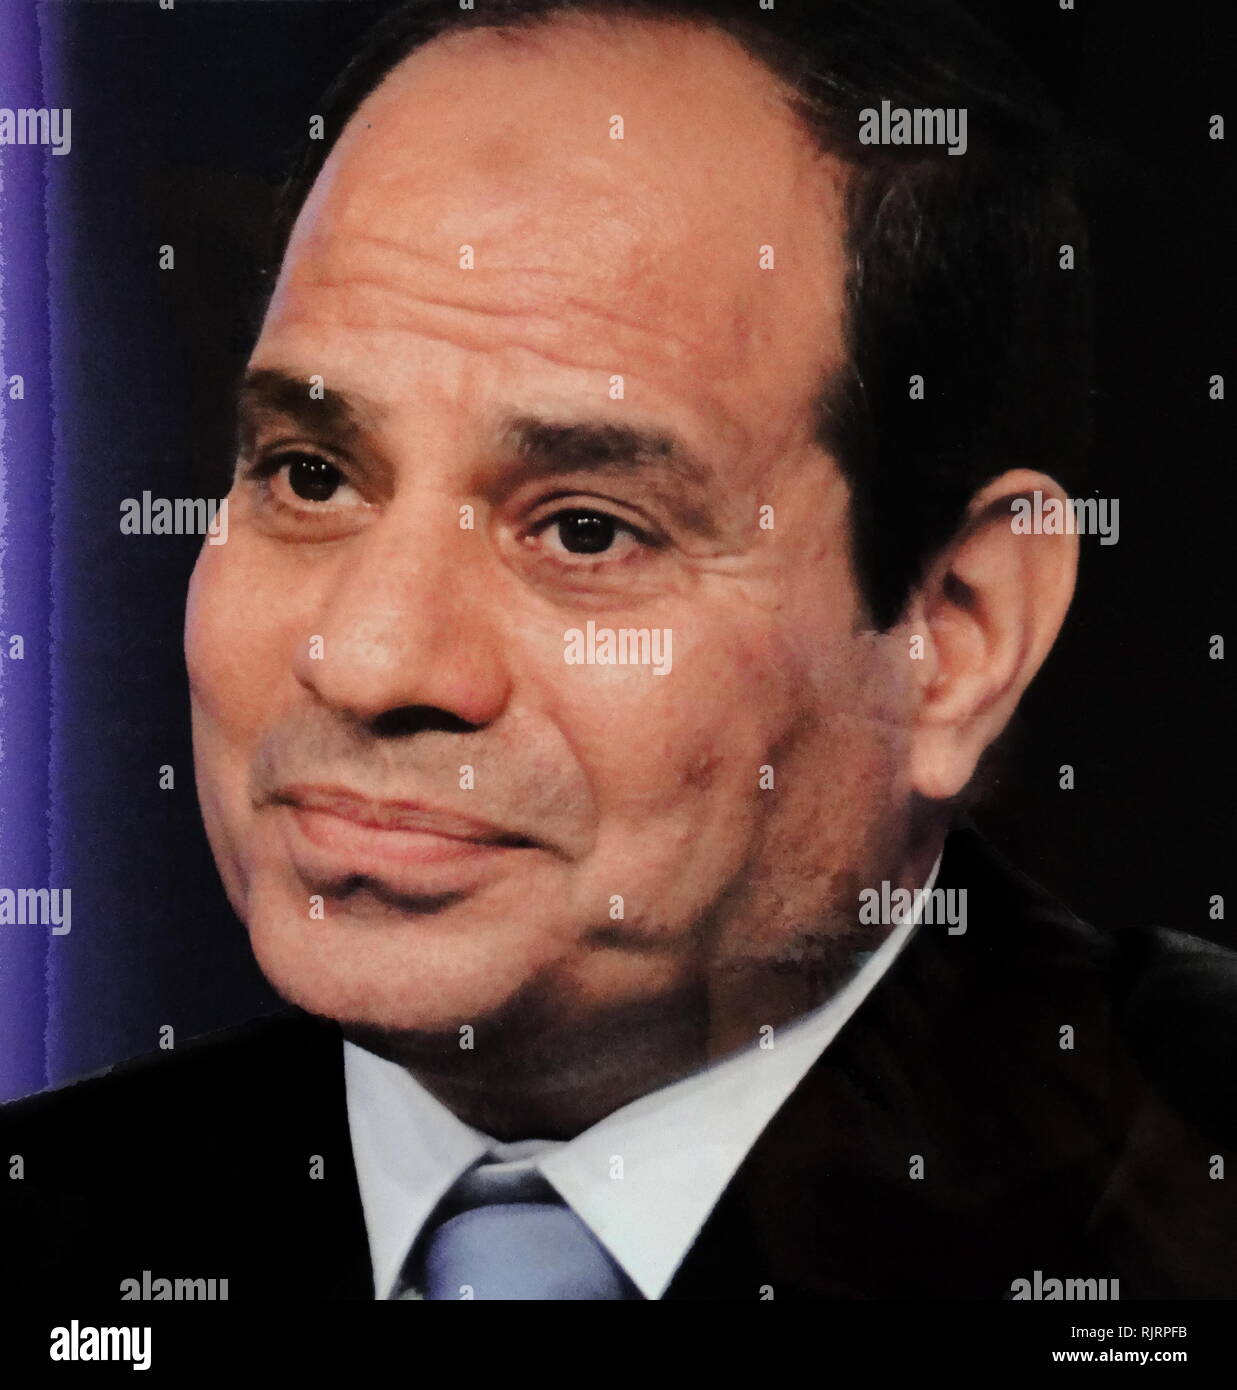 Abdel Fattah el-Sisi (* 1954), ägyptischer Politiker und aktuelle Präsident Ägyptens, im Amt seit 2014. Stockfoto